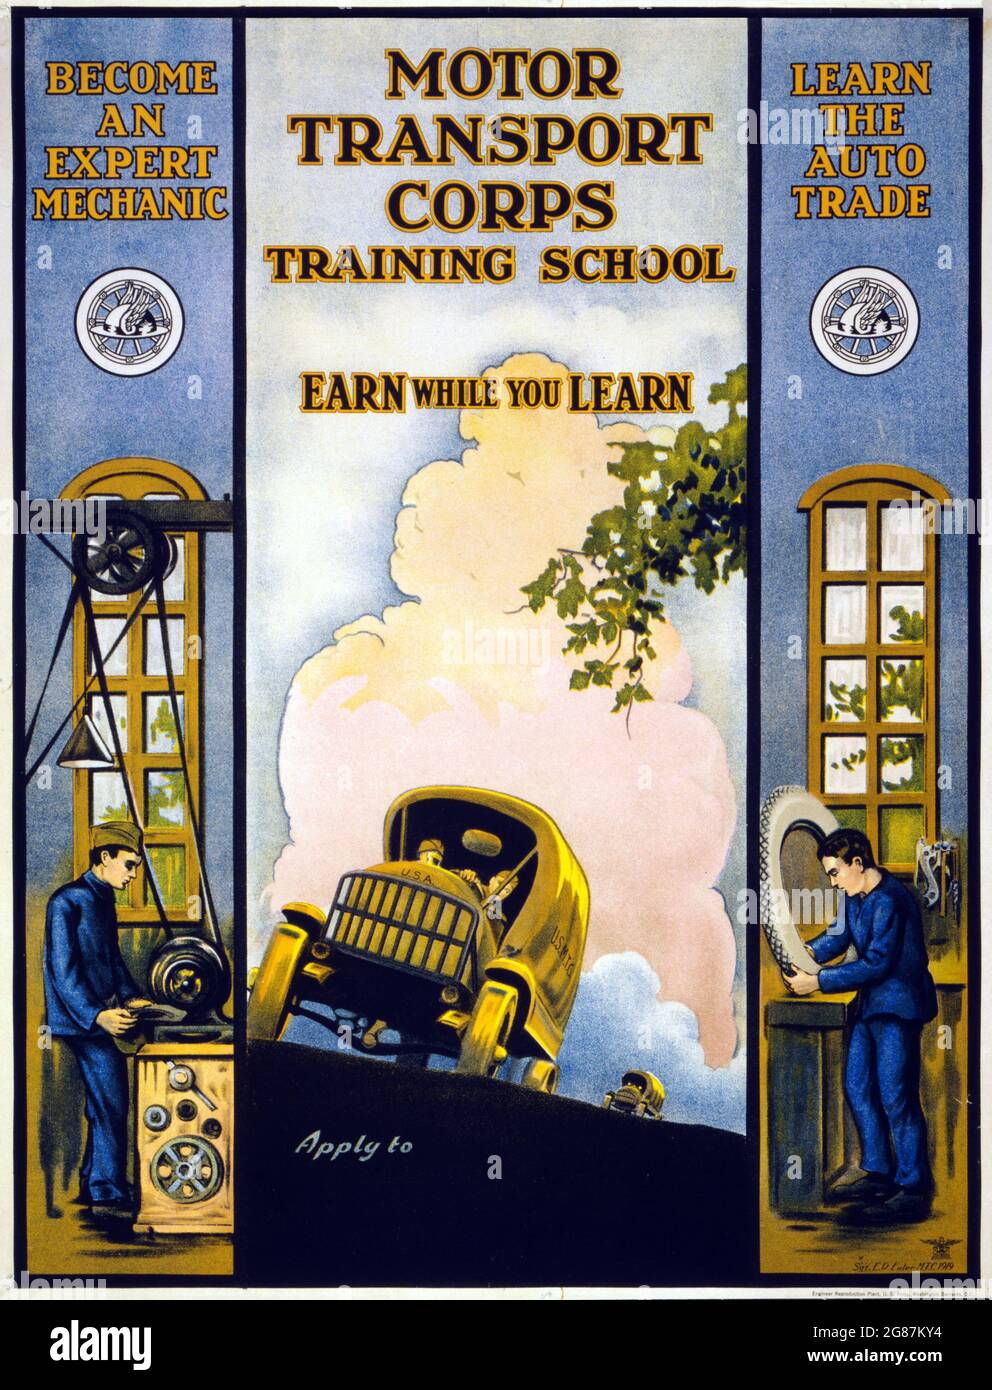 Publicité vintage. L'école de formation de Motor transport corps gagnent pendant que vous apprenez. Sgt. E.R. Euler, MTC 1919. Corps de transport automobile de l'armée américaine. Banque D'Images